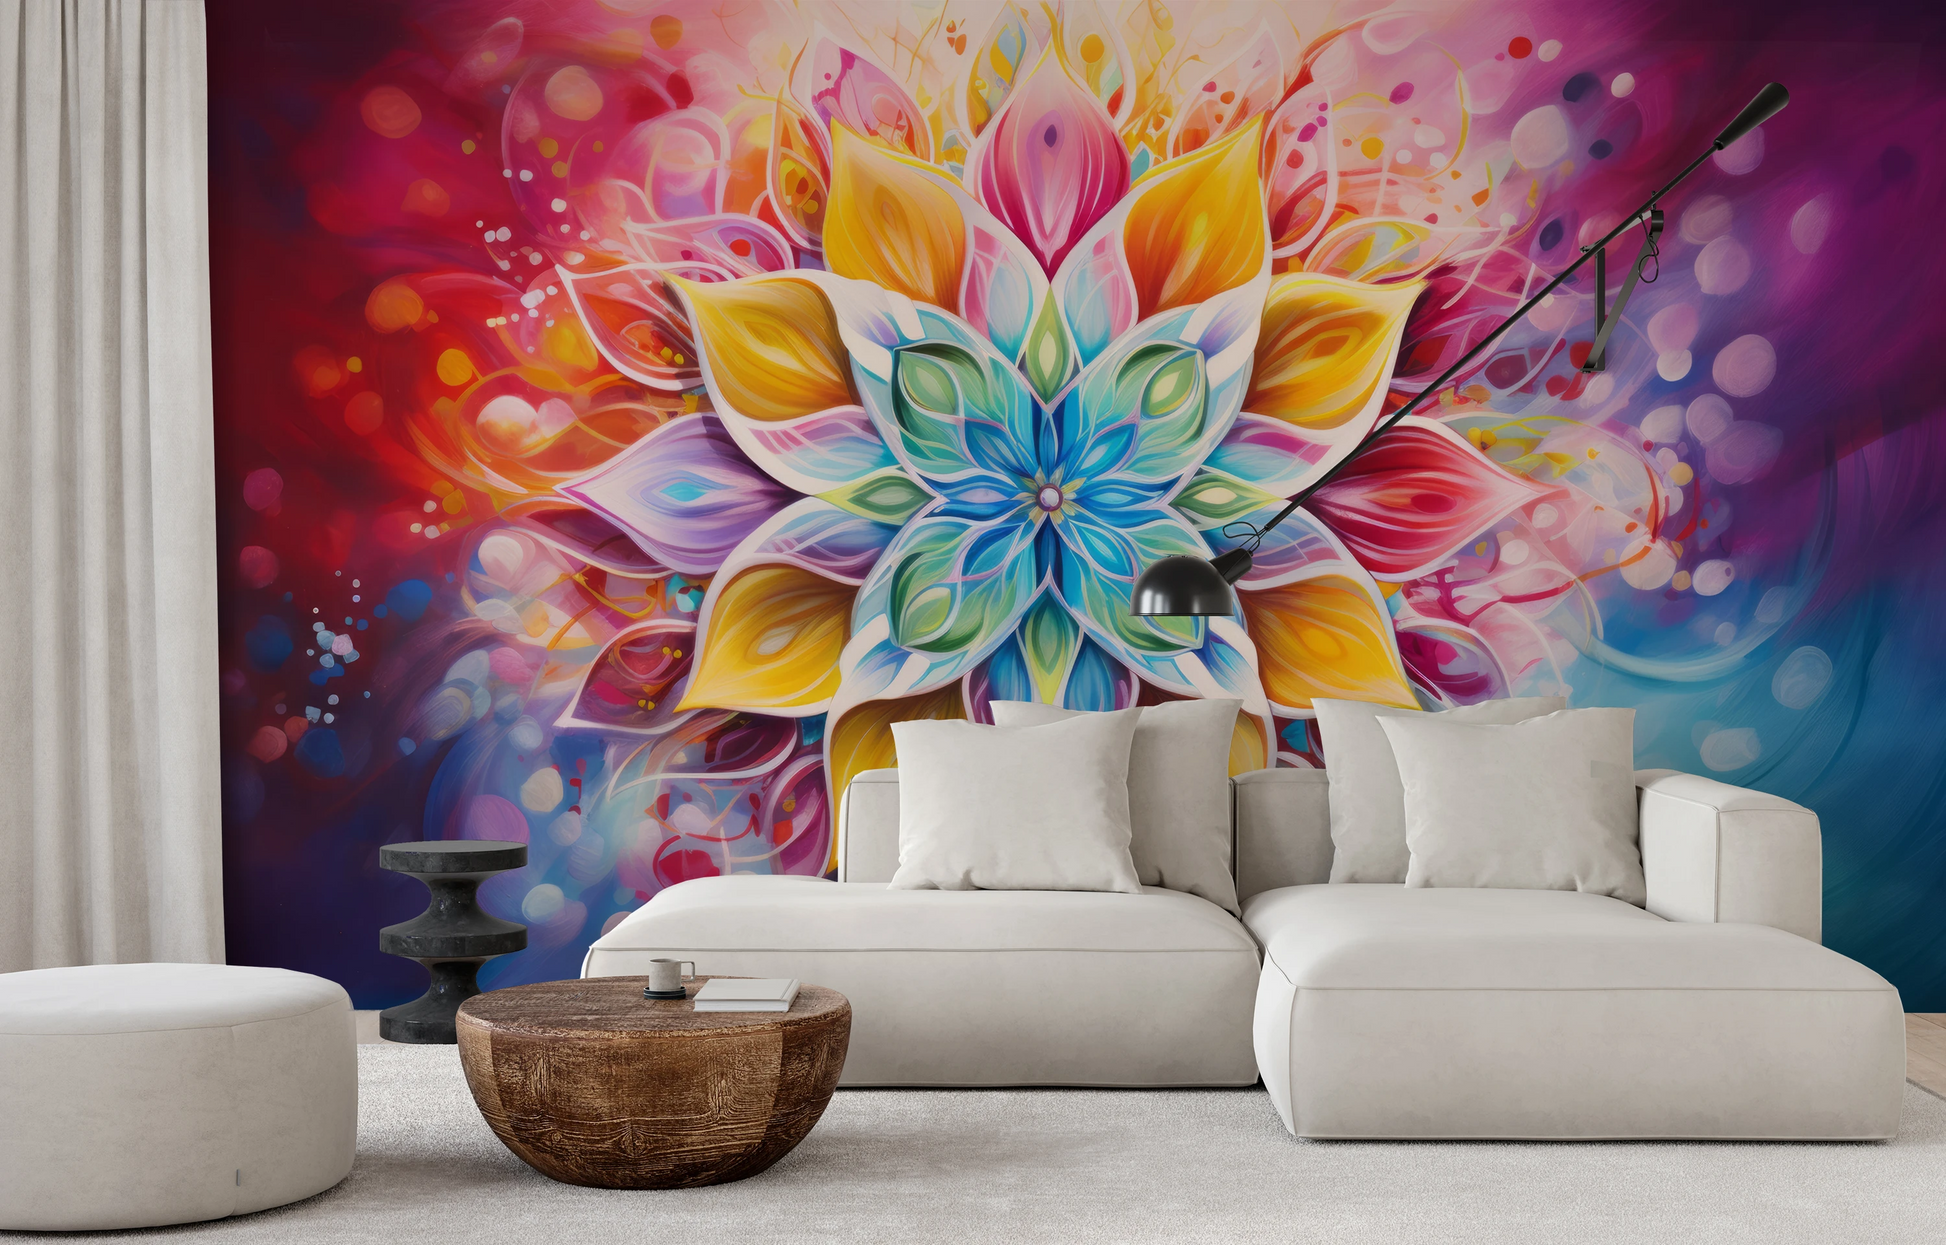 Fototapeta malowana o nazwie Harmonic Lotus pokazana w aranżacji wnętrza.